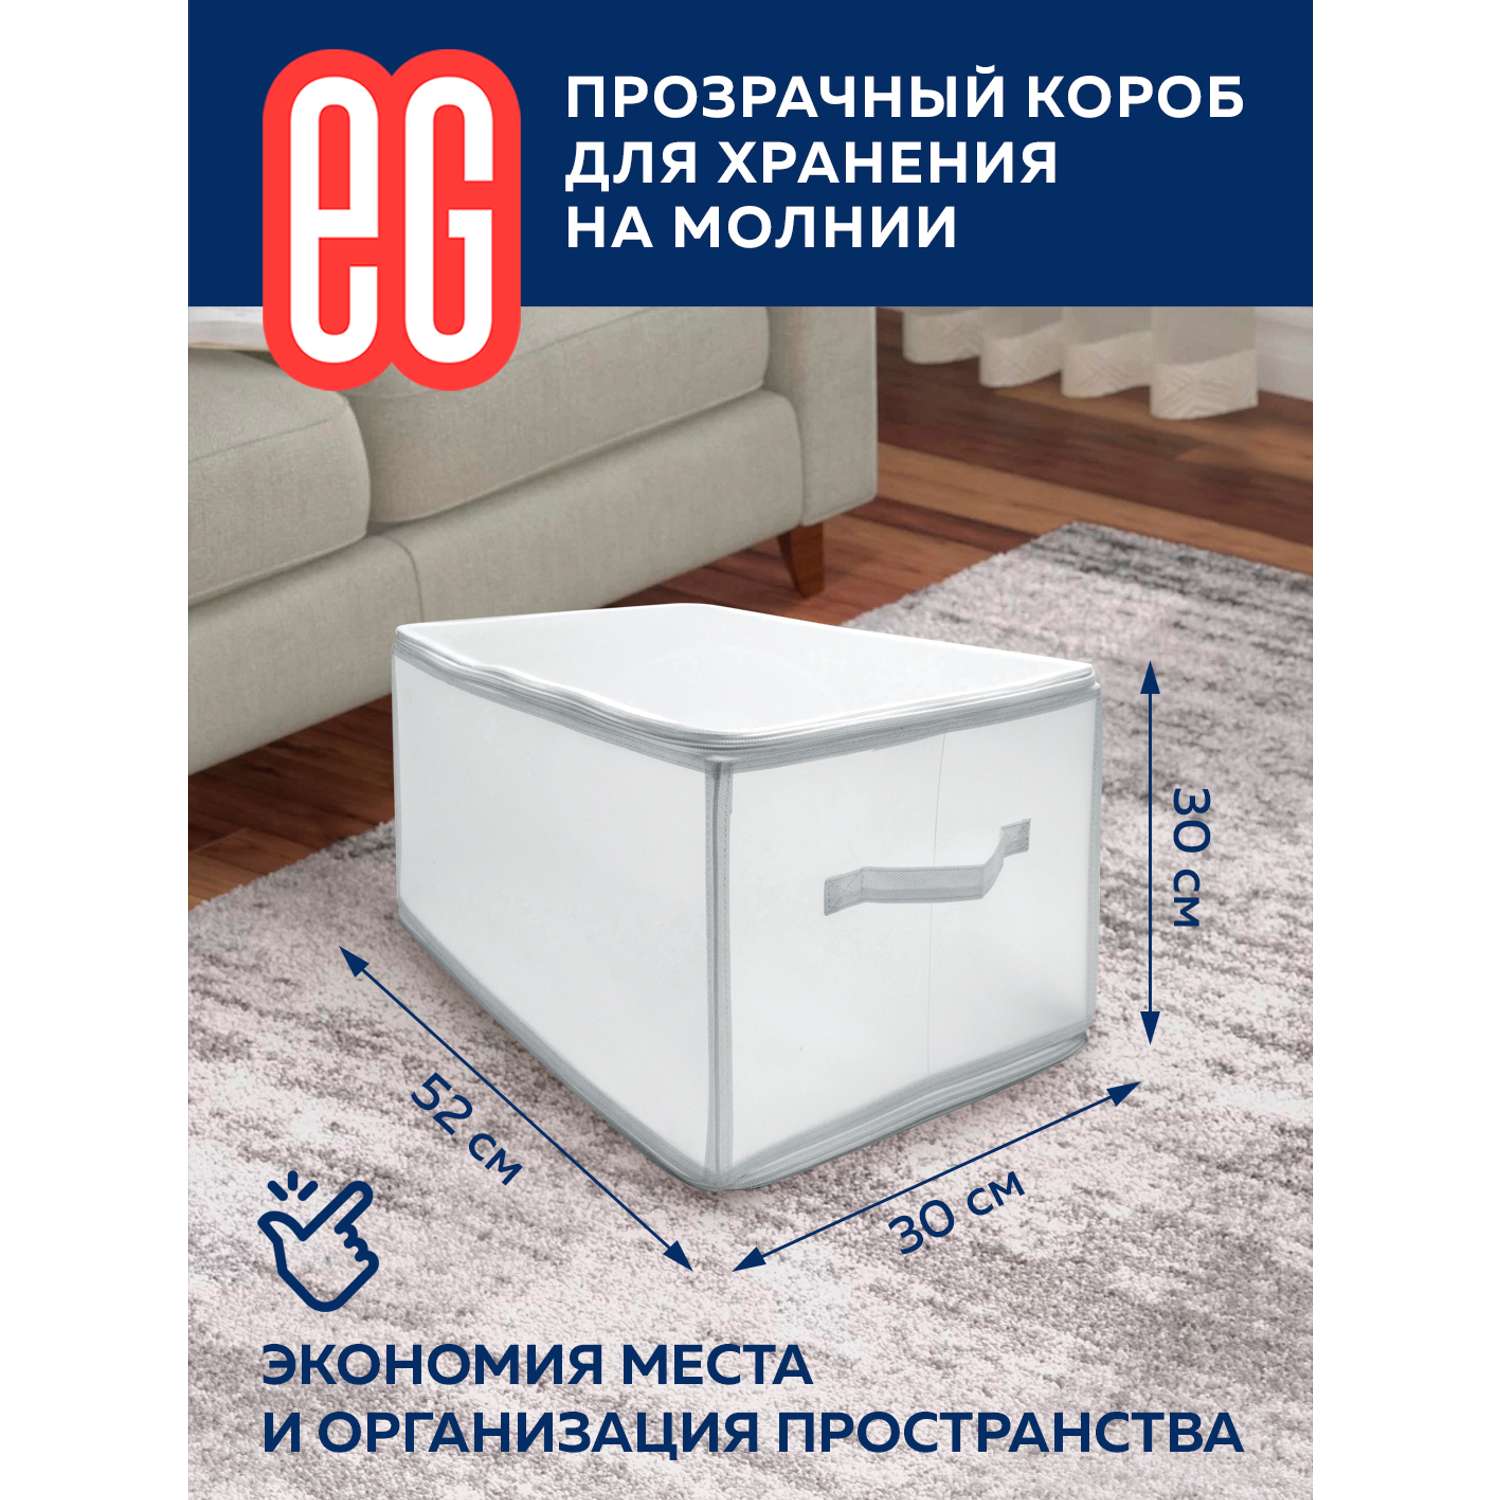 Короб для хранения ЕВРОГАРАНТ серии Zip-box полипропилен 52х30х30 см - фото 2